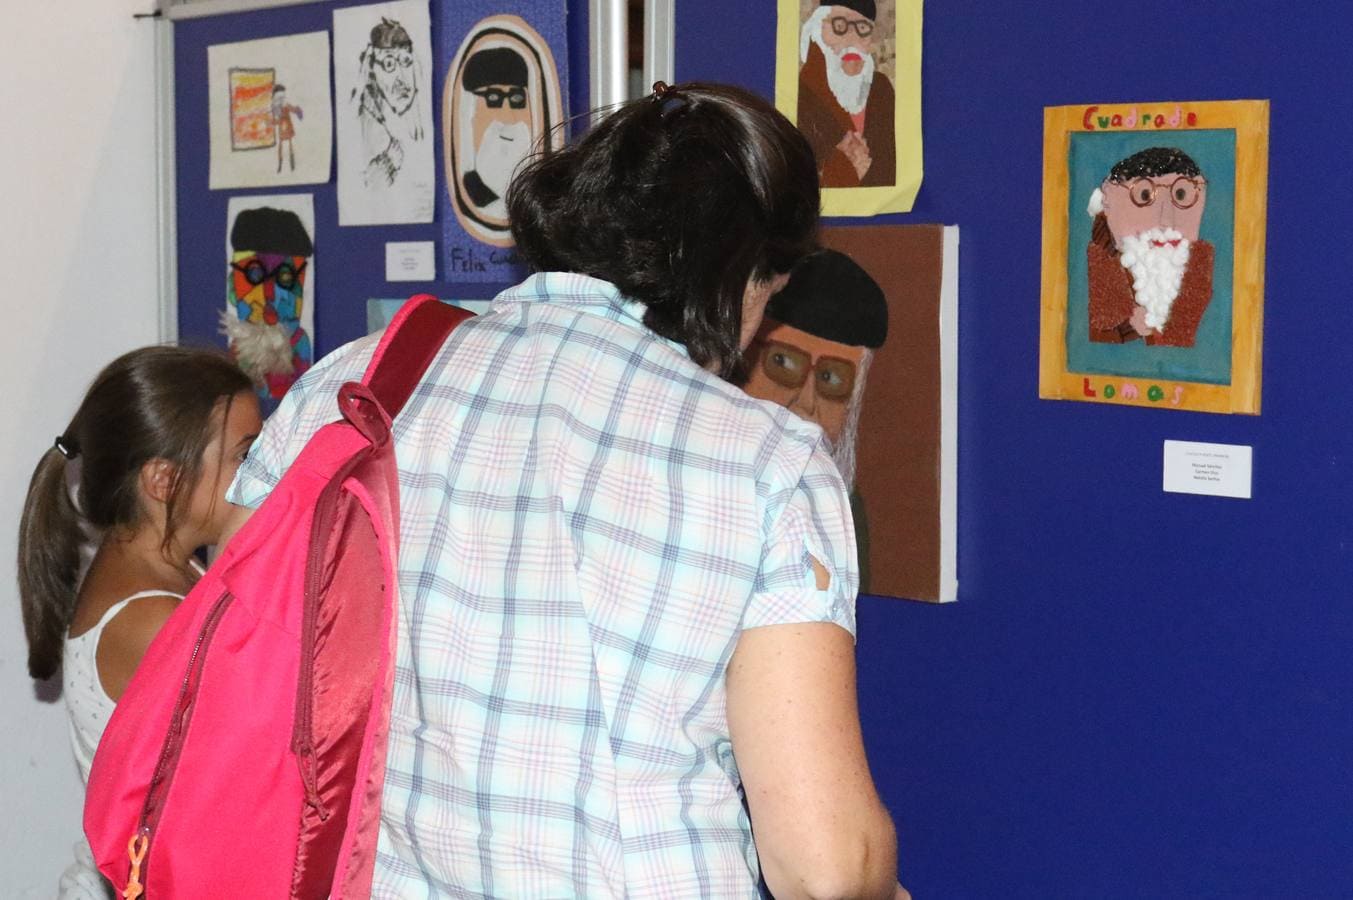 La exposición permanecerá abierta en el claustro de la iglesia de El Salvador los cuatro fines de semana de septiembre